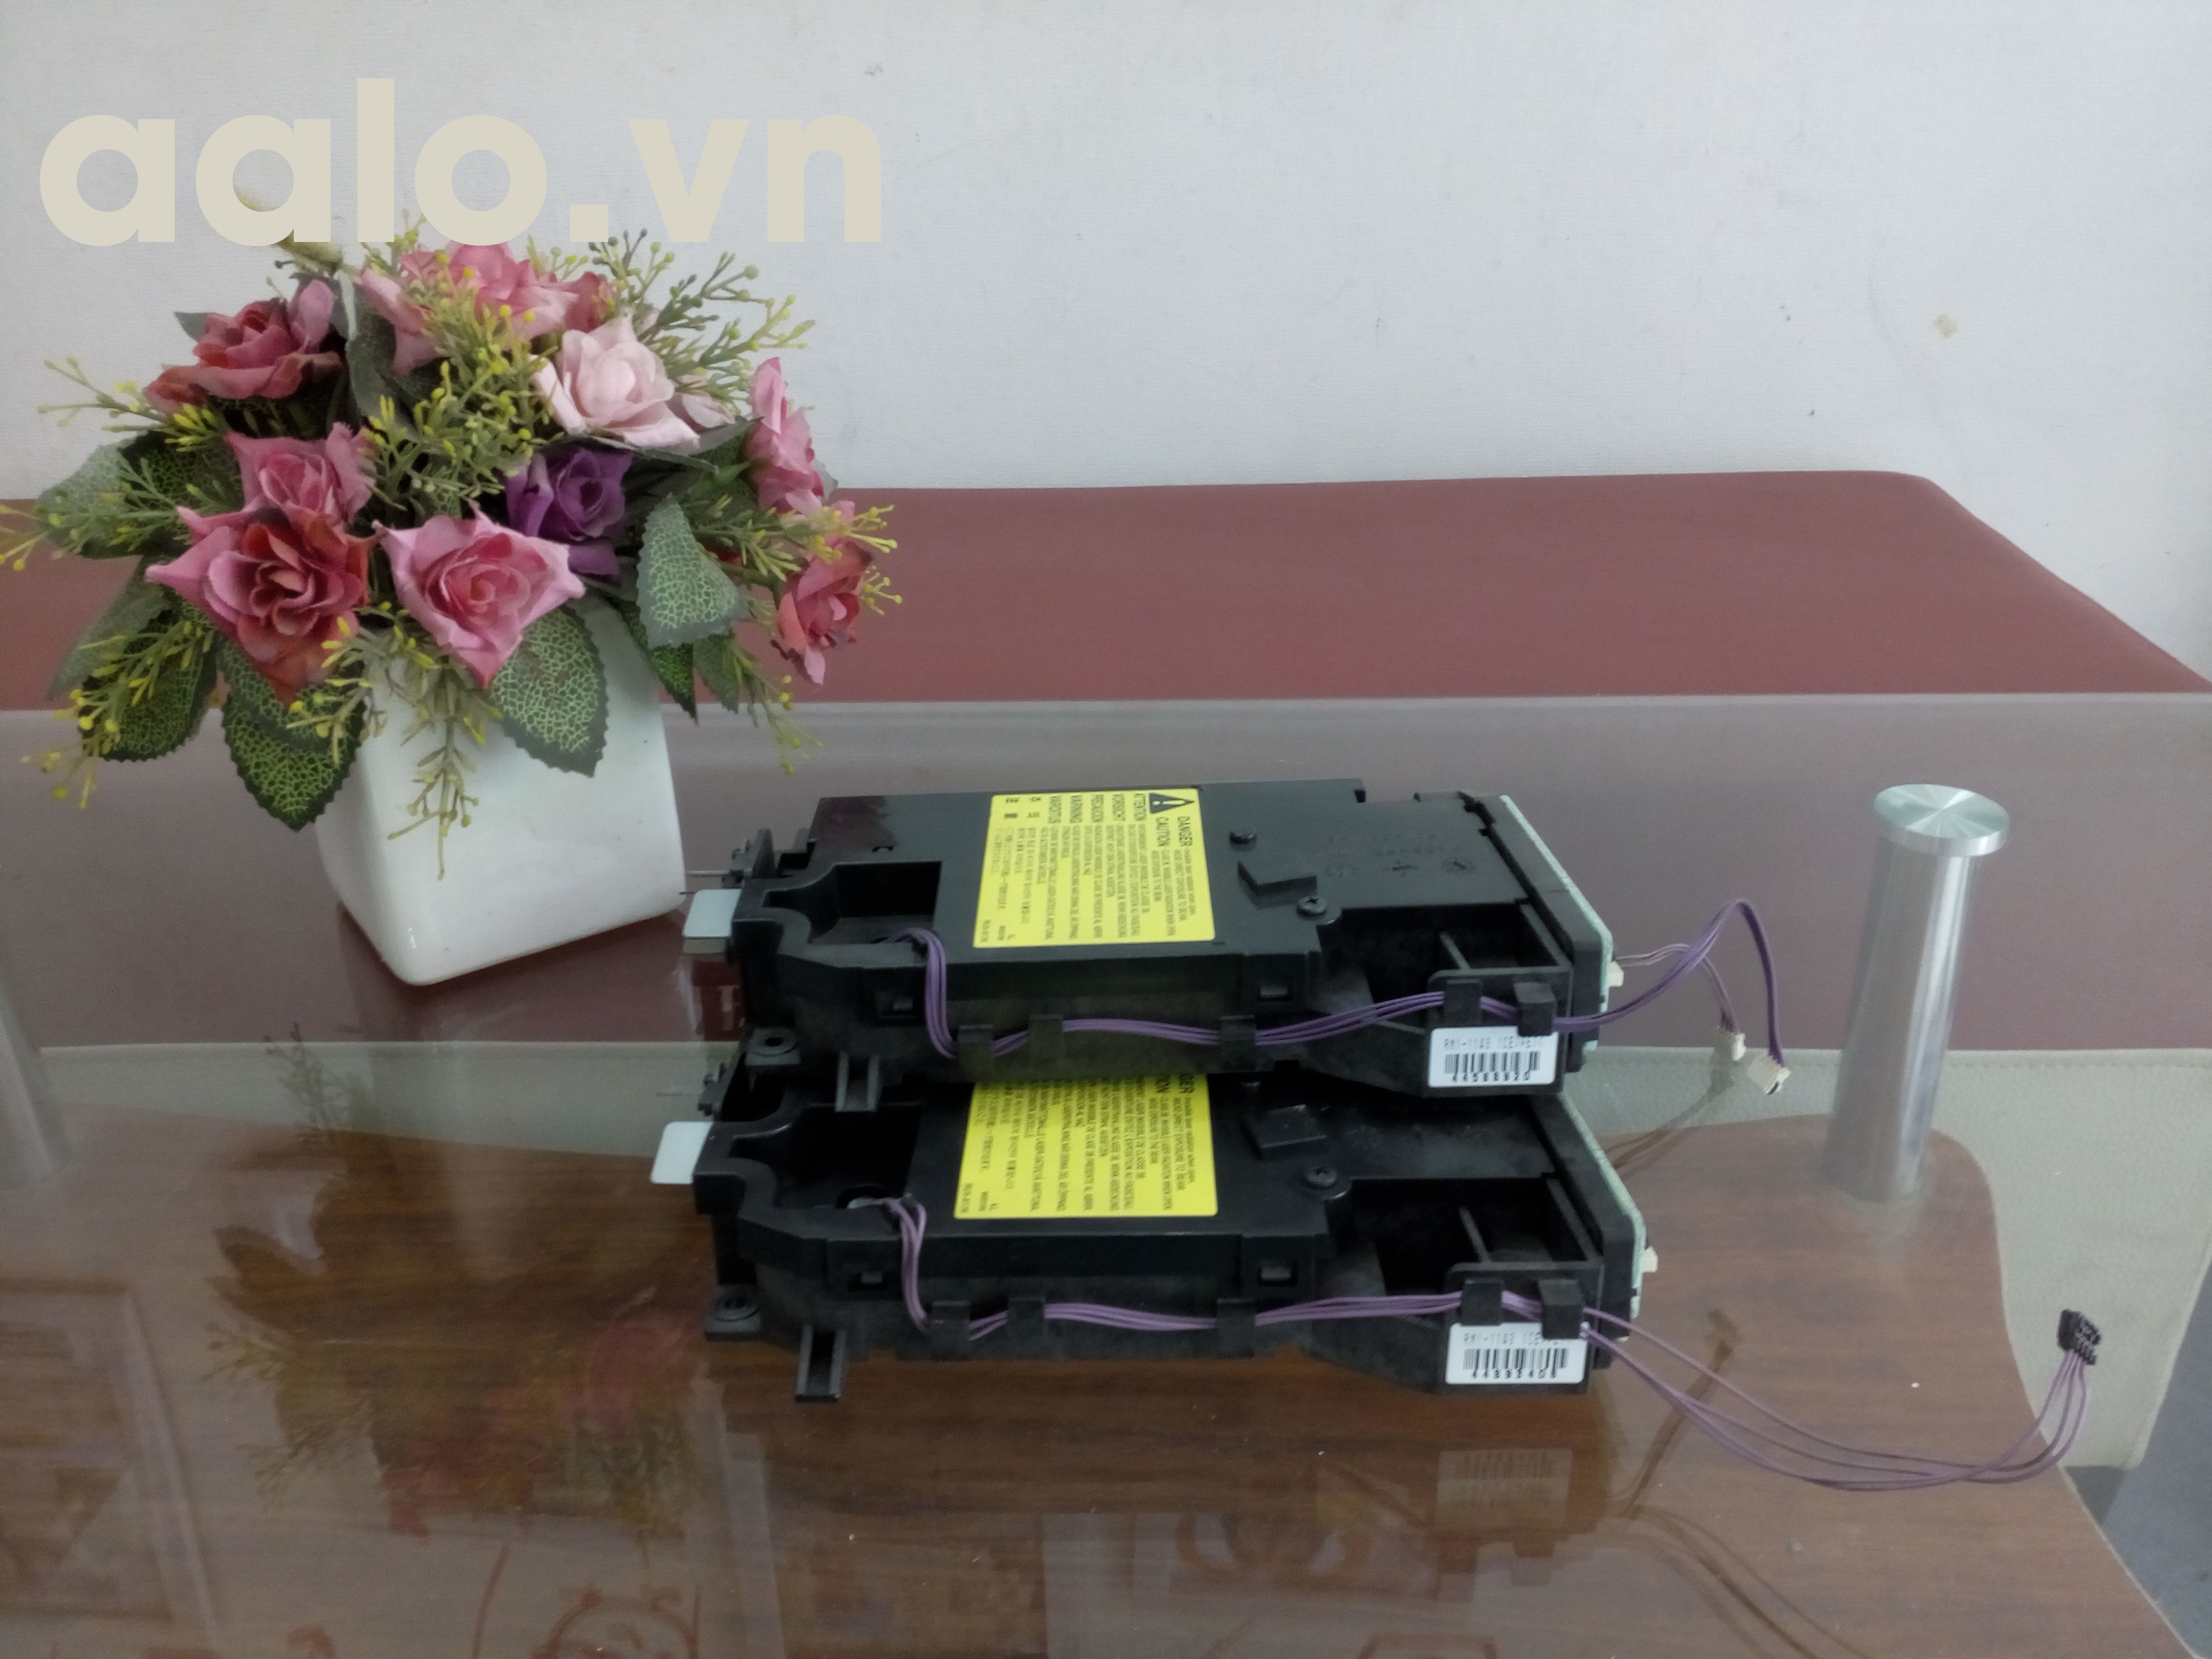 Quang máy in Canon LBP 3300/ HP1160/ HP1320/ HP3390/hp 2015d/hp 2015 (RM1-1470)